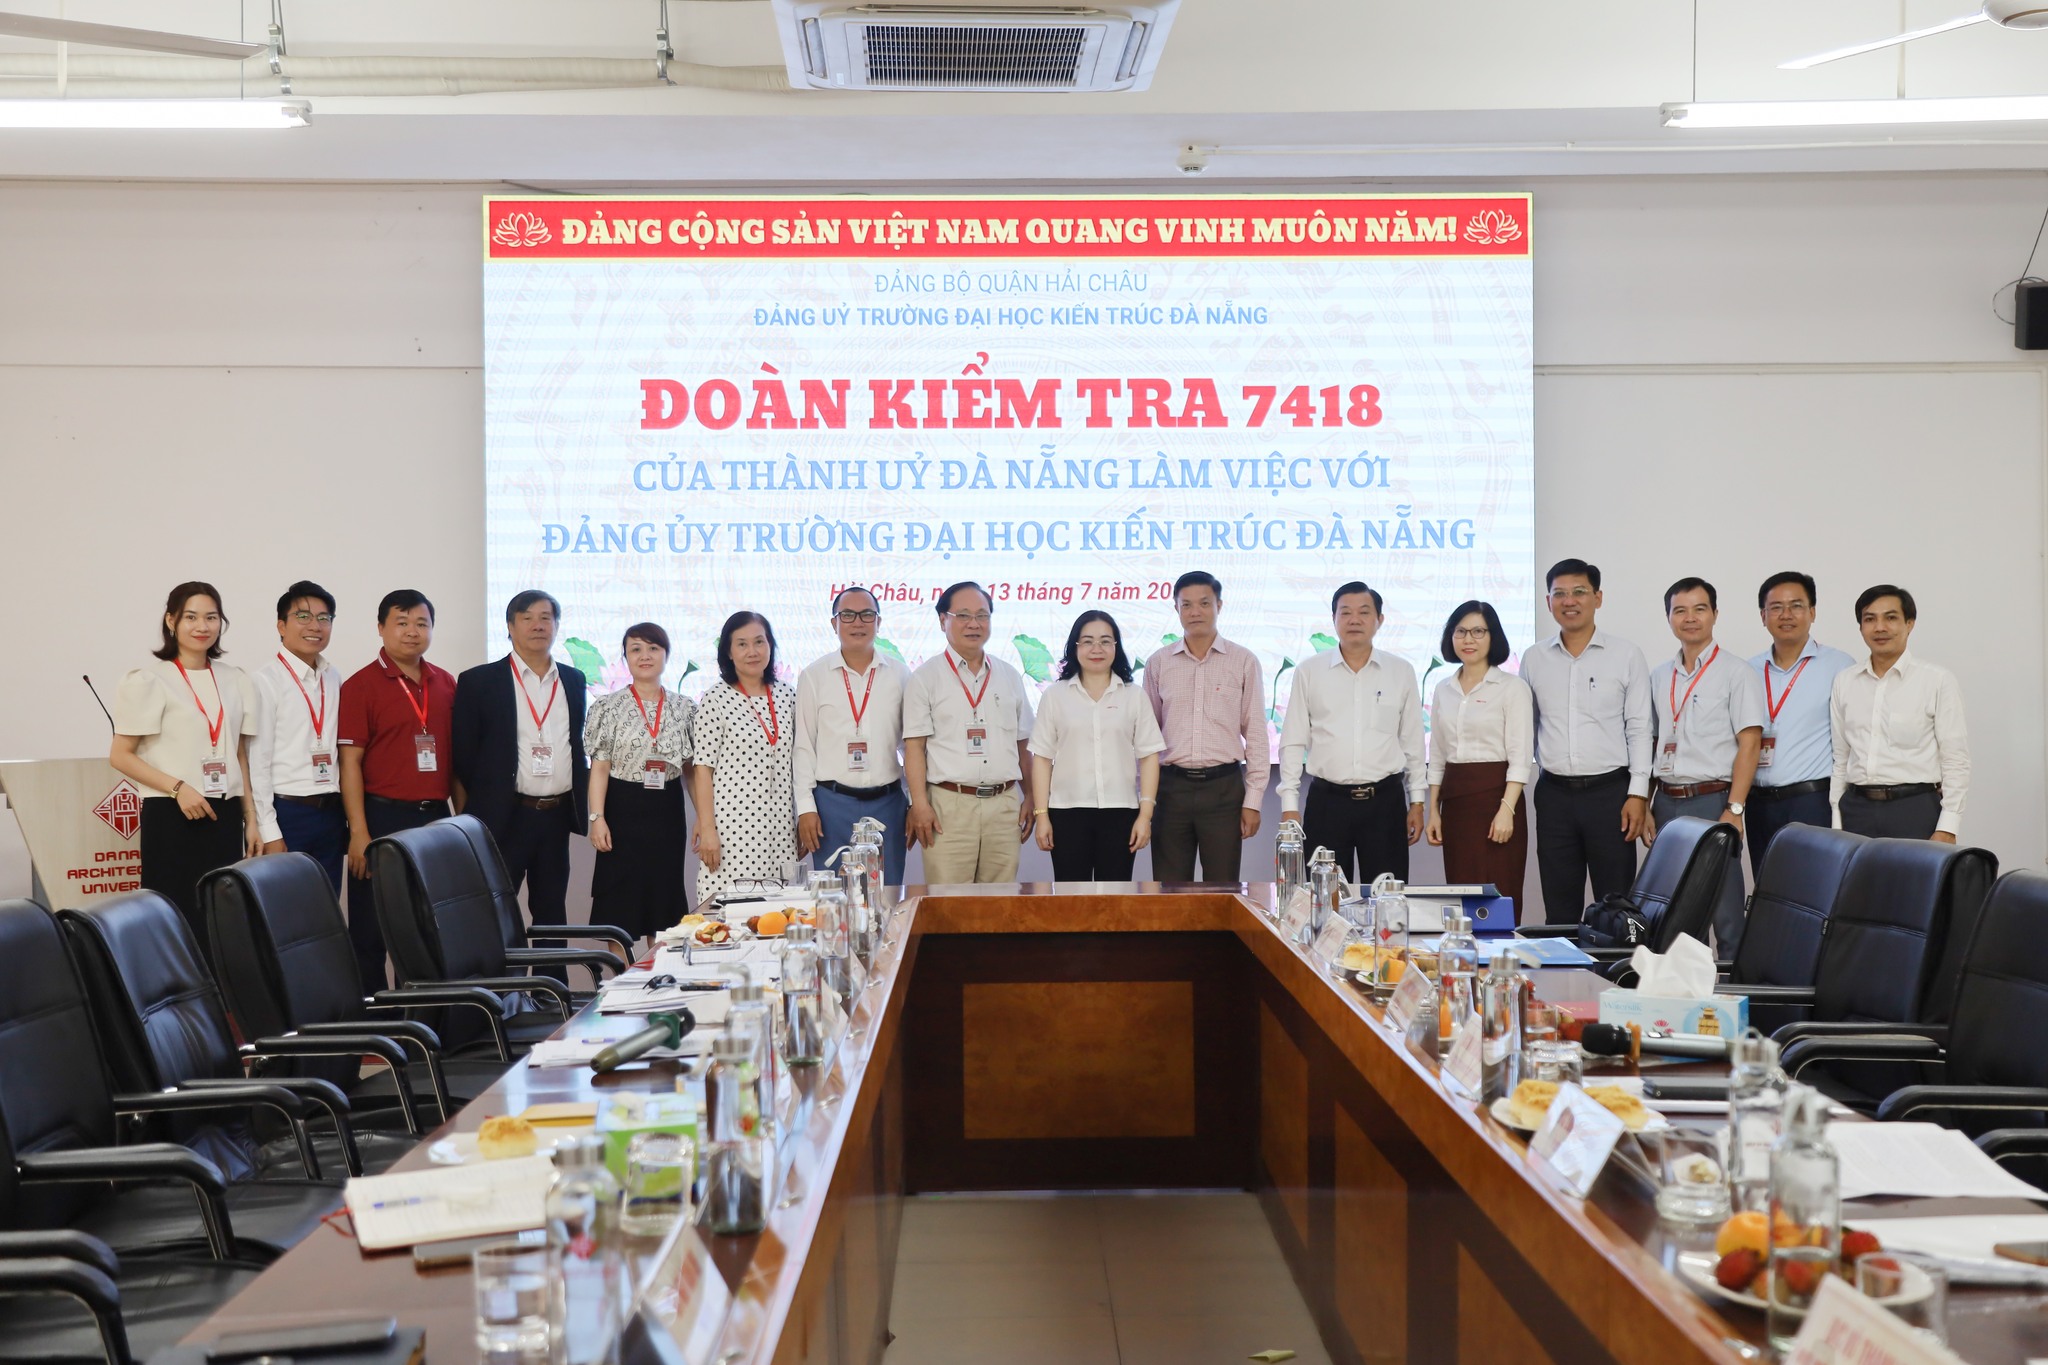 Đoàn kiểm tra 7418 của Thành ủy Đà Nẵng đã làm việc với Đảng ủy Trường Đại học Kiến trúc Đà Nẵng